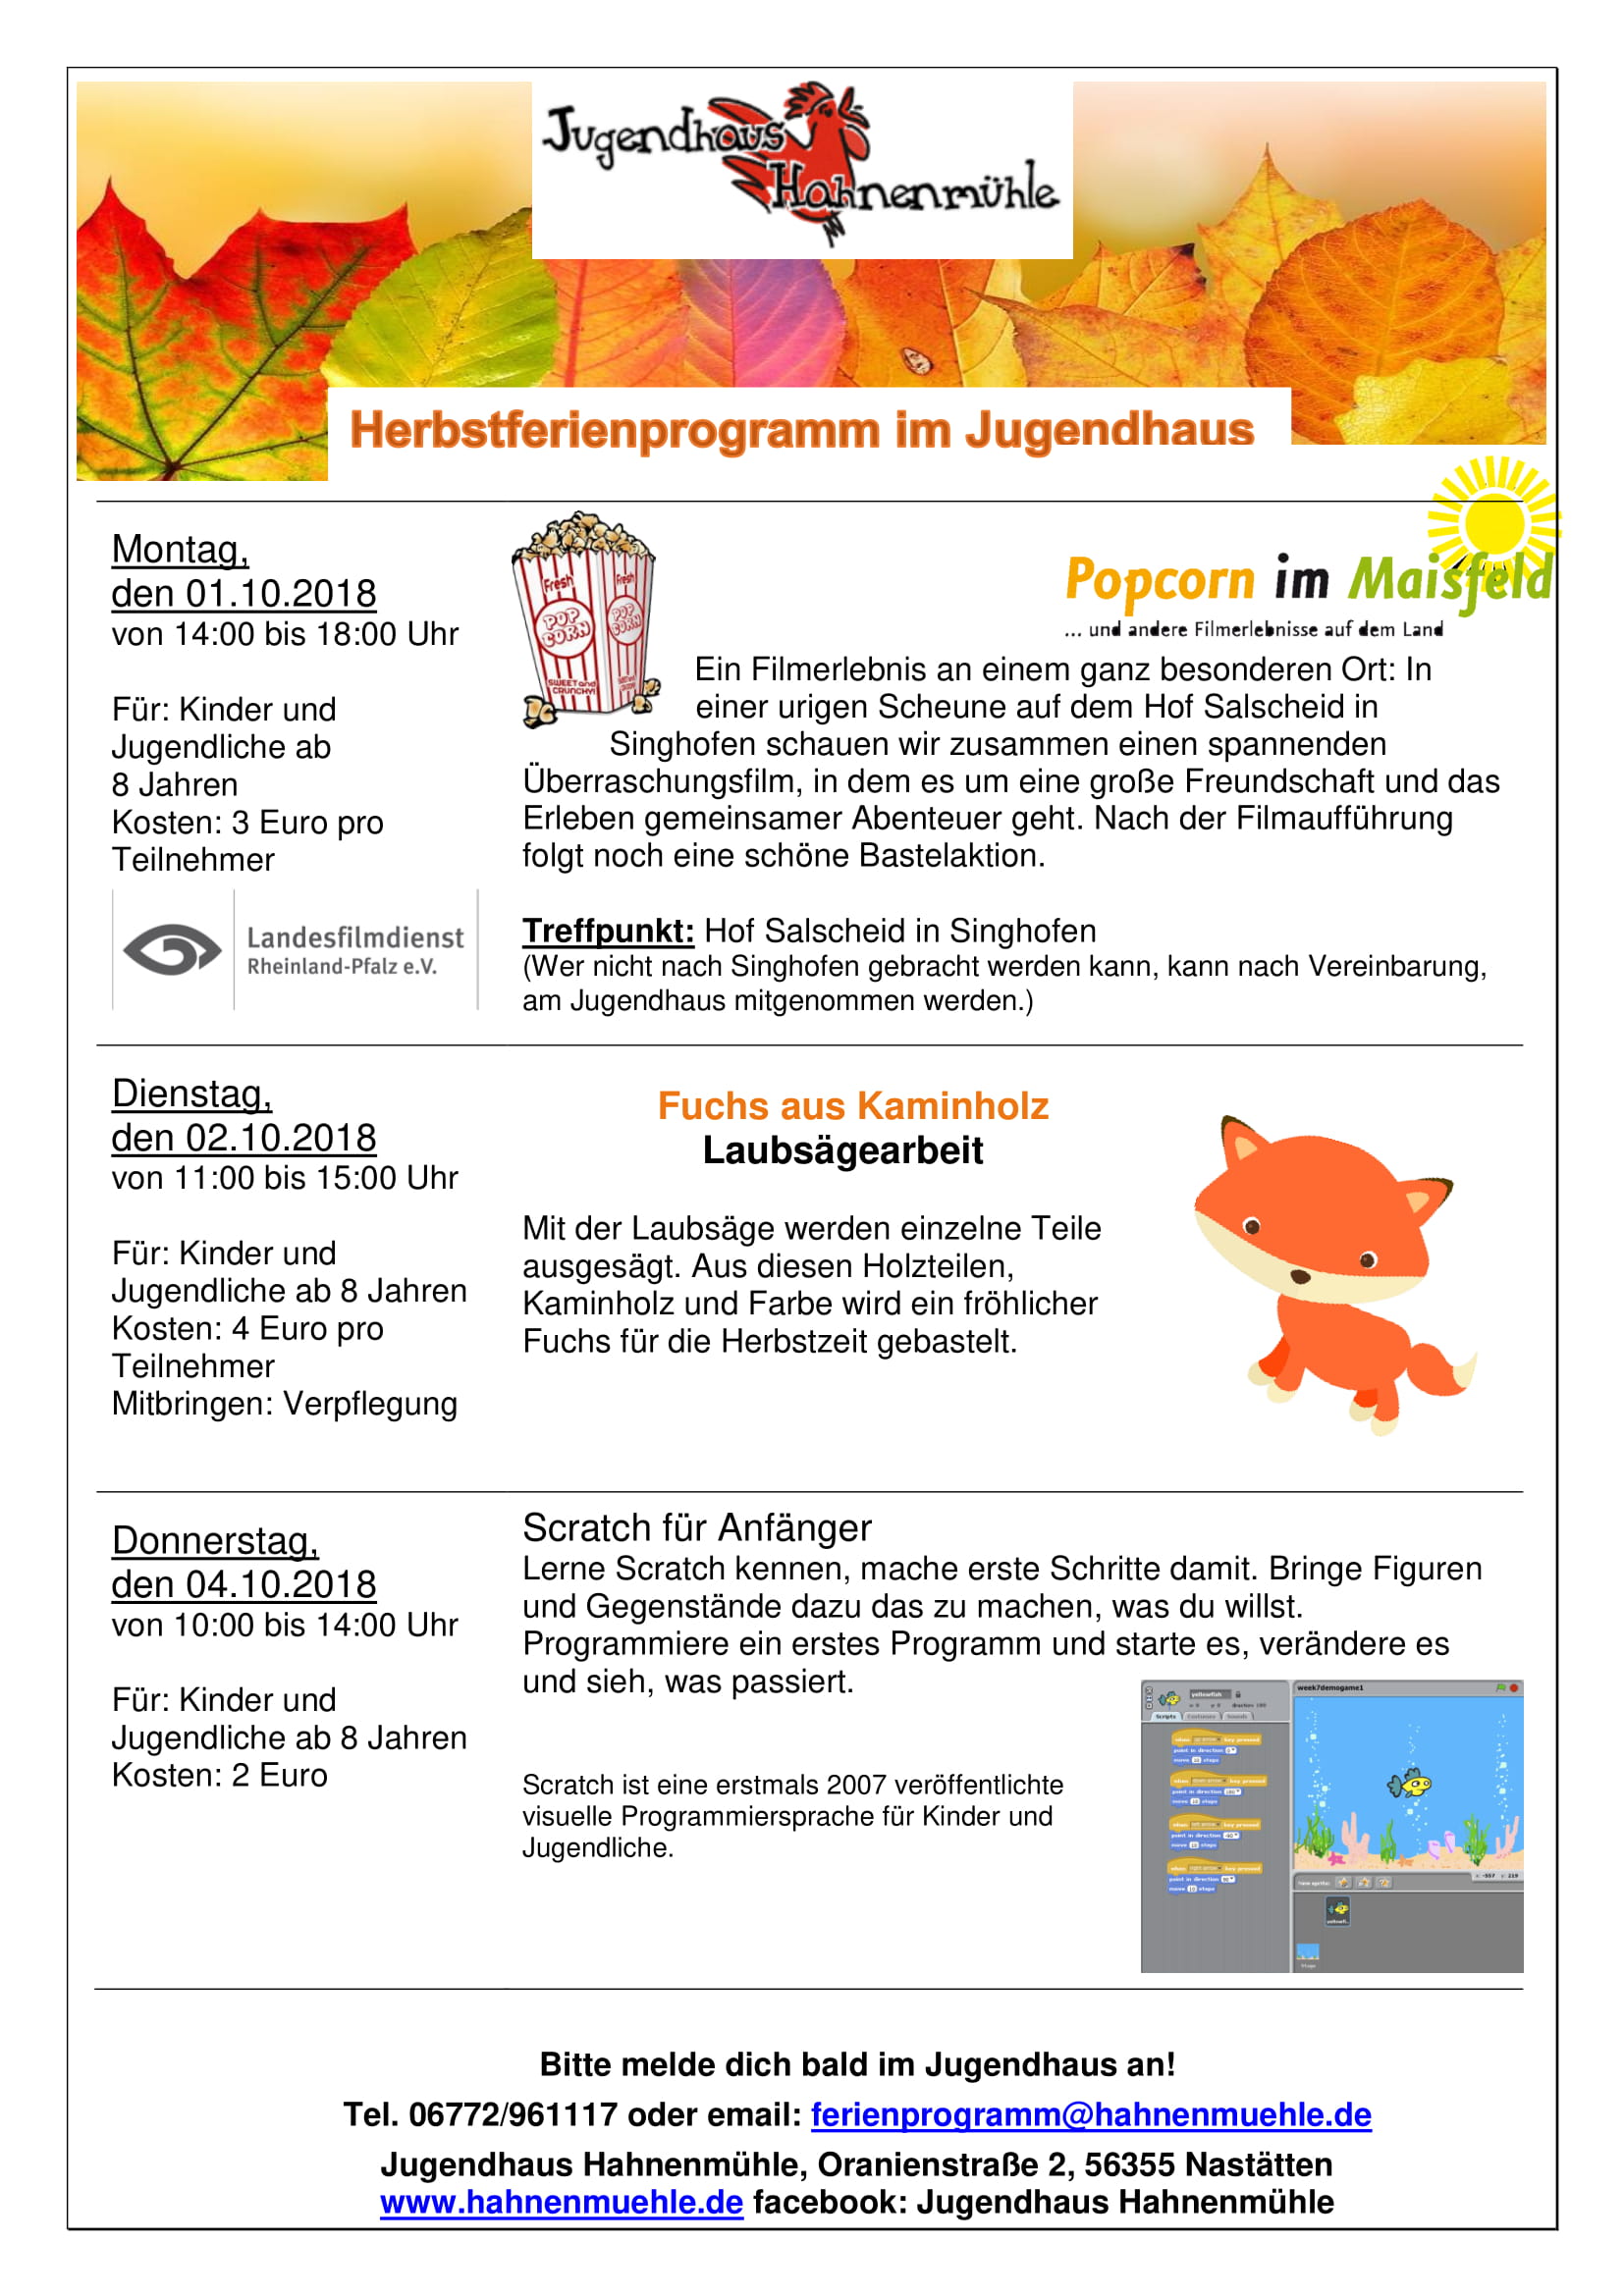 https://www.hahnenmuehle.de//Veranstaltungen/Herbstferienprogramm/Herbstferien 2018/Herbstferien 2018_3.jpg